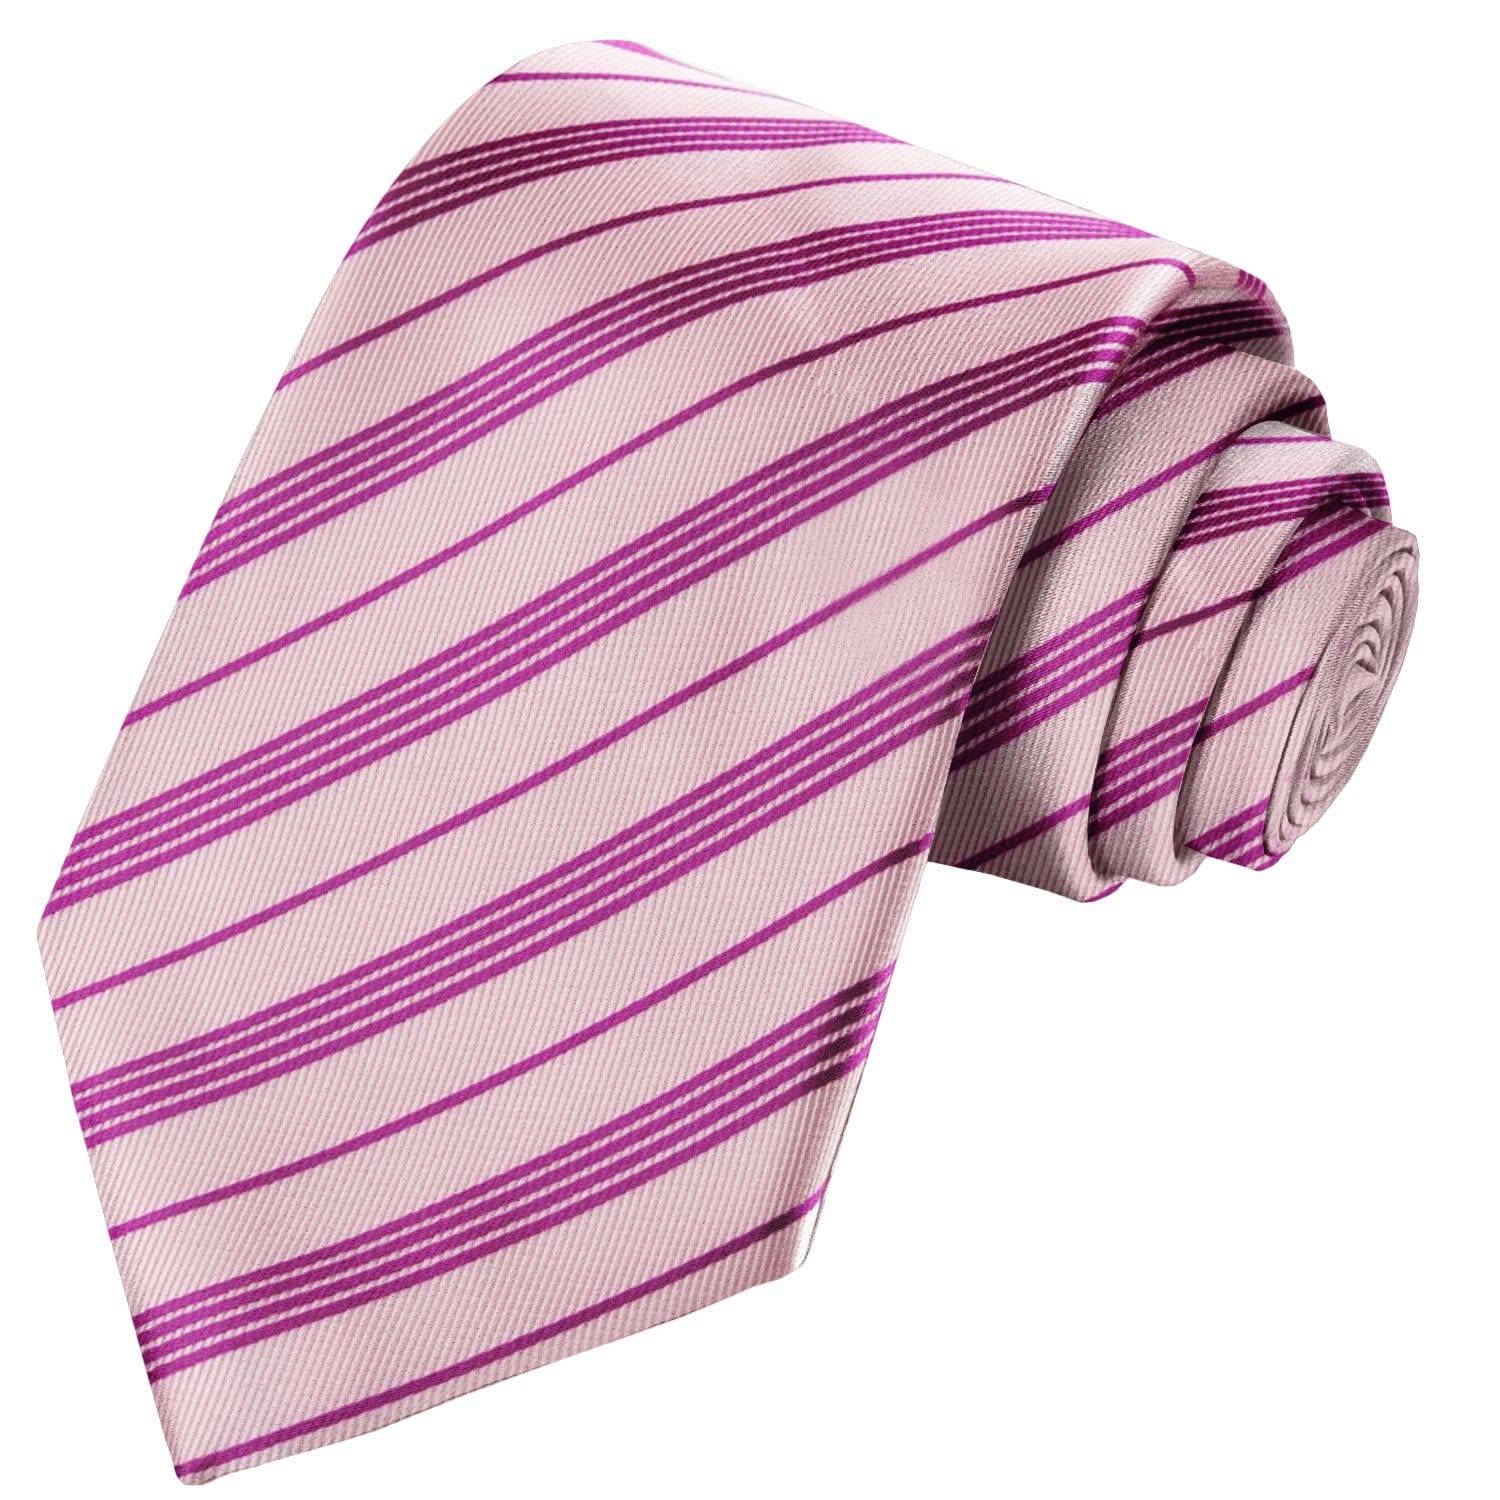 Lemonade Pink-Medium Violet Red Striped Tie - Tie, bowtie, pocket square  | Kissties